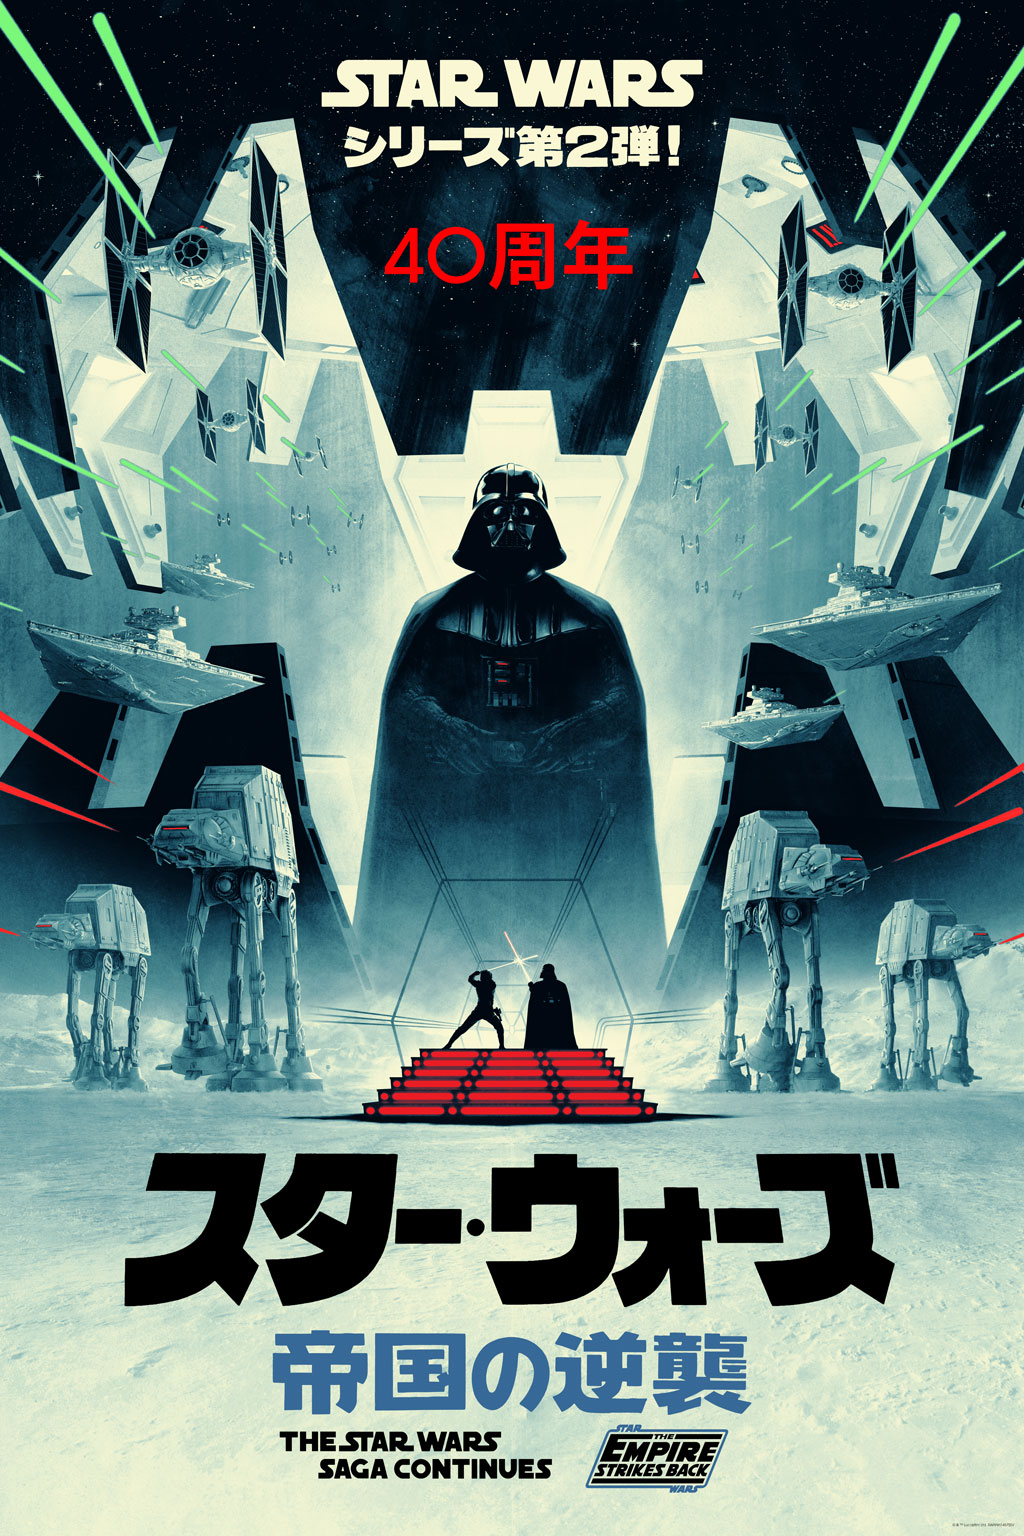 The Empire Strikes Back variant by Matt Ferguson  (Image: Lucasfilm)